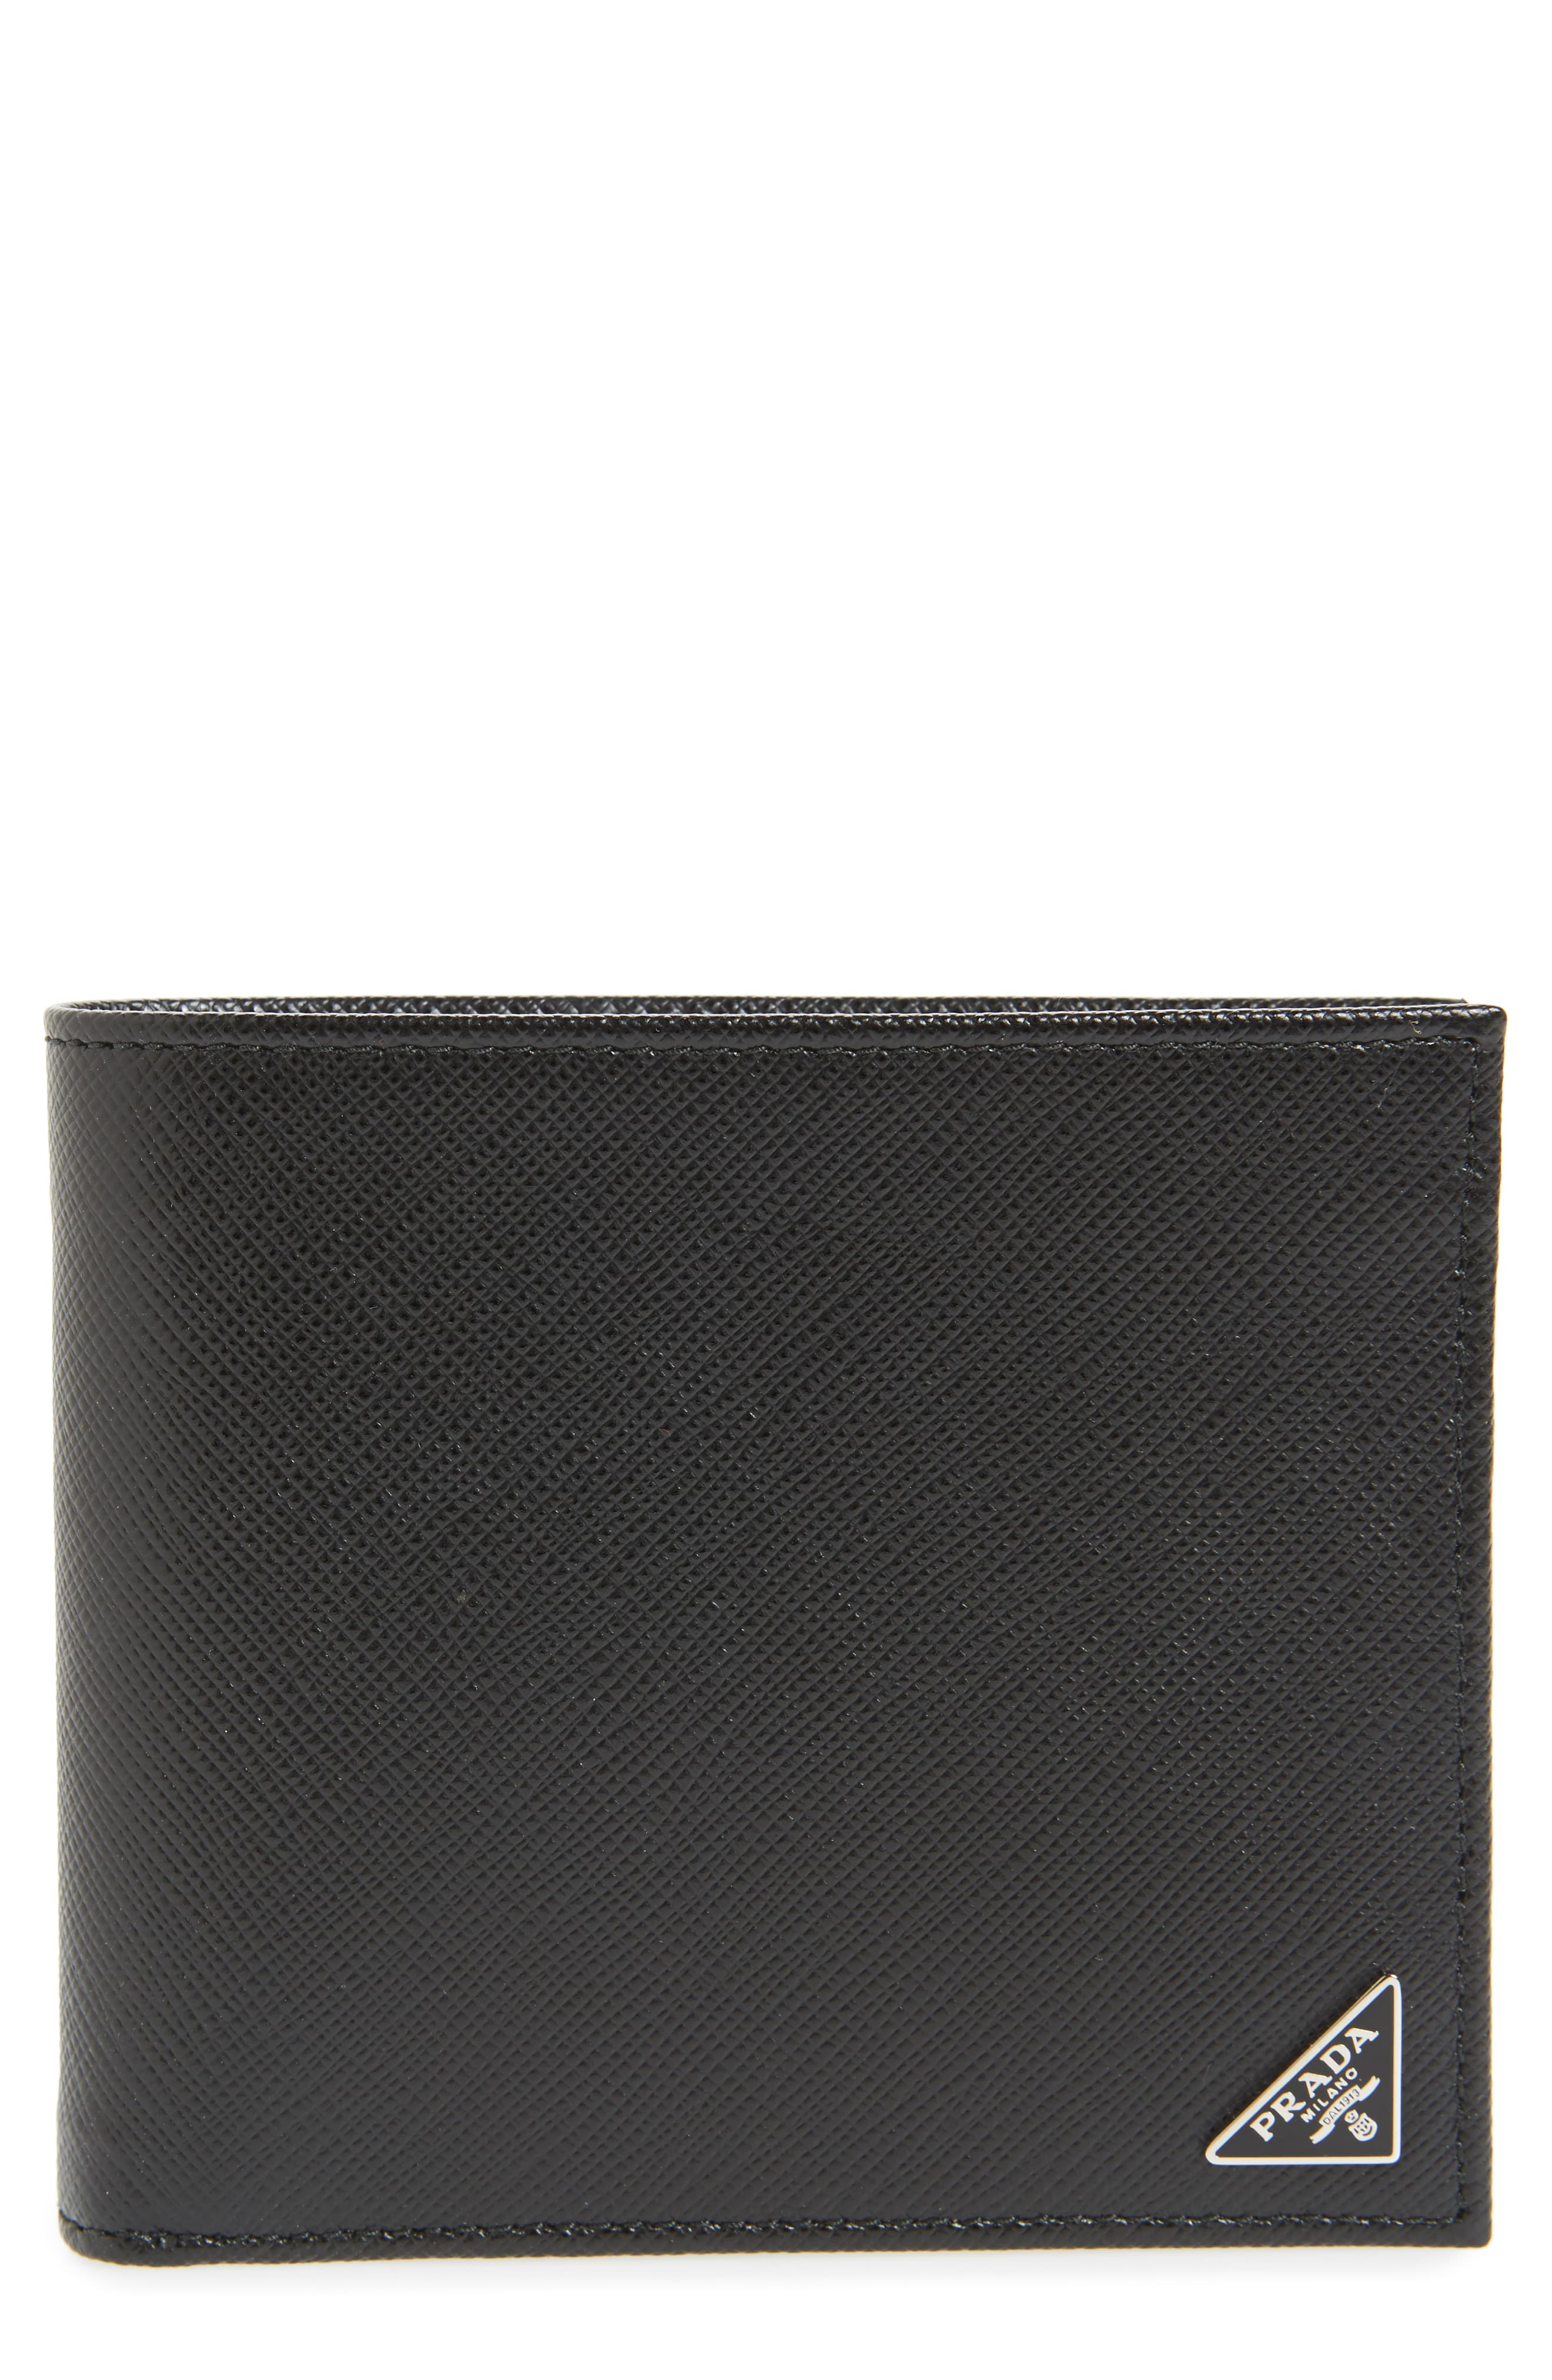 Men’s Prada Leather Wallet – | The Fashionisto